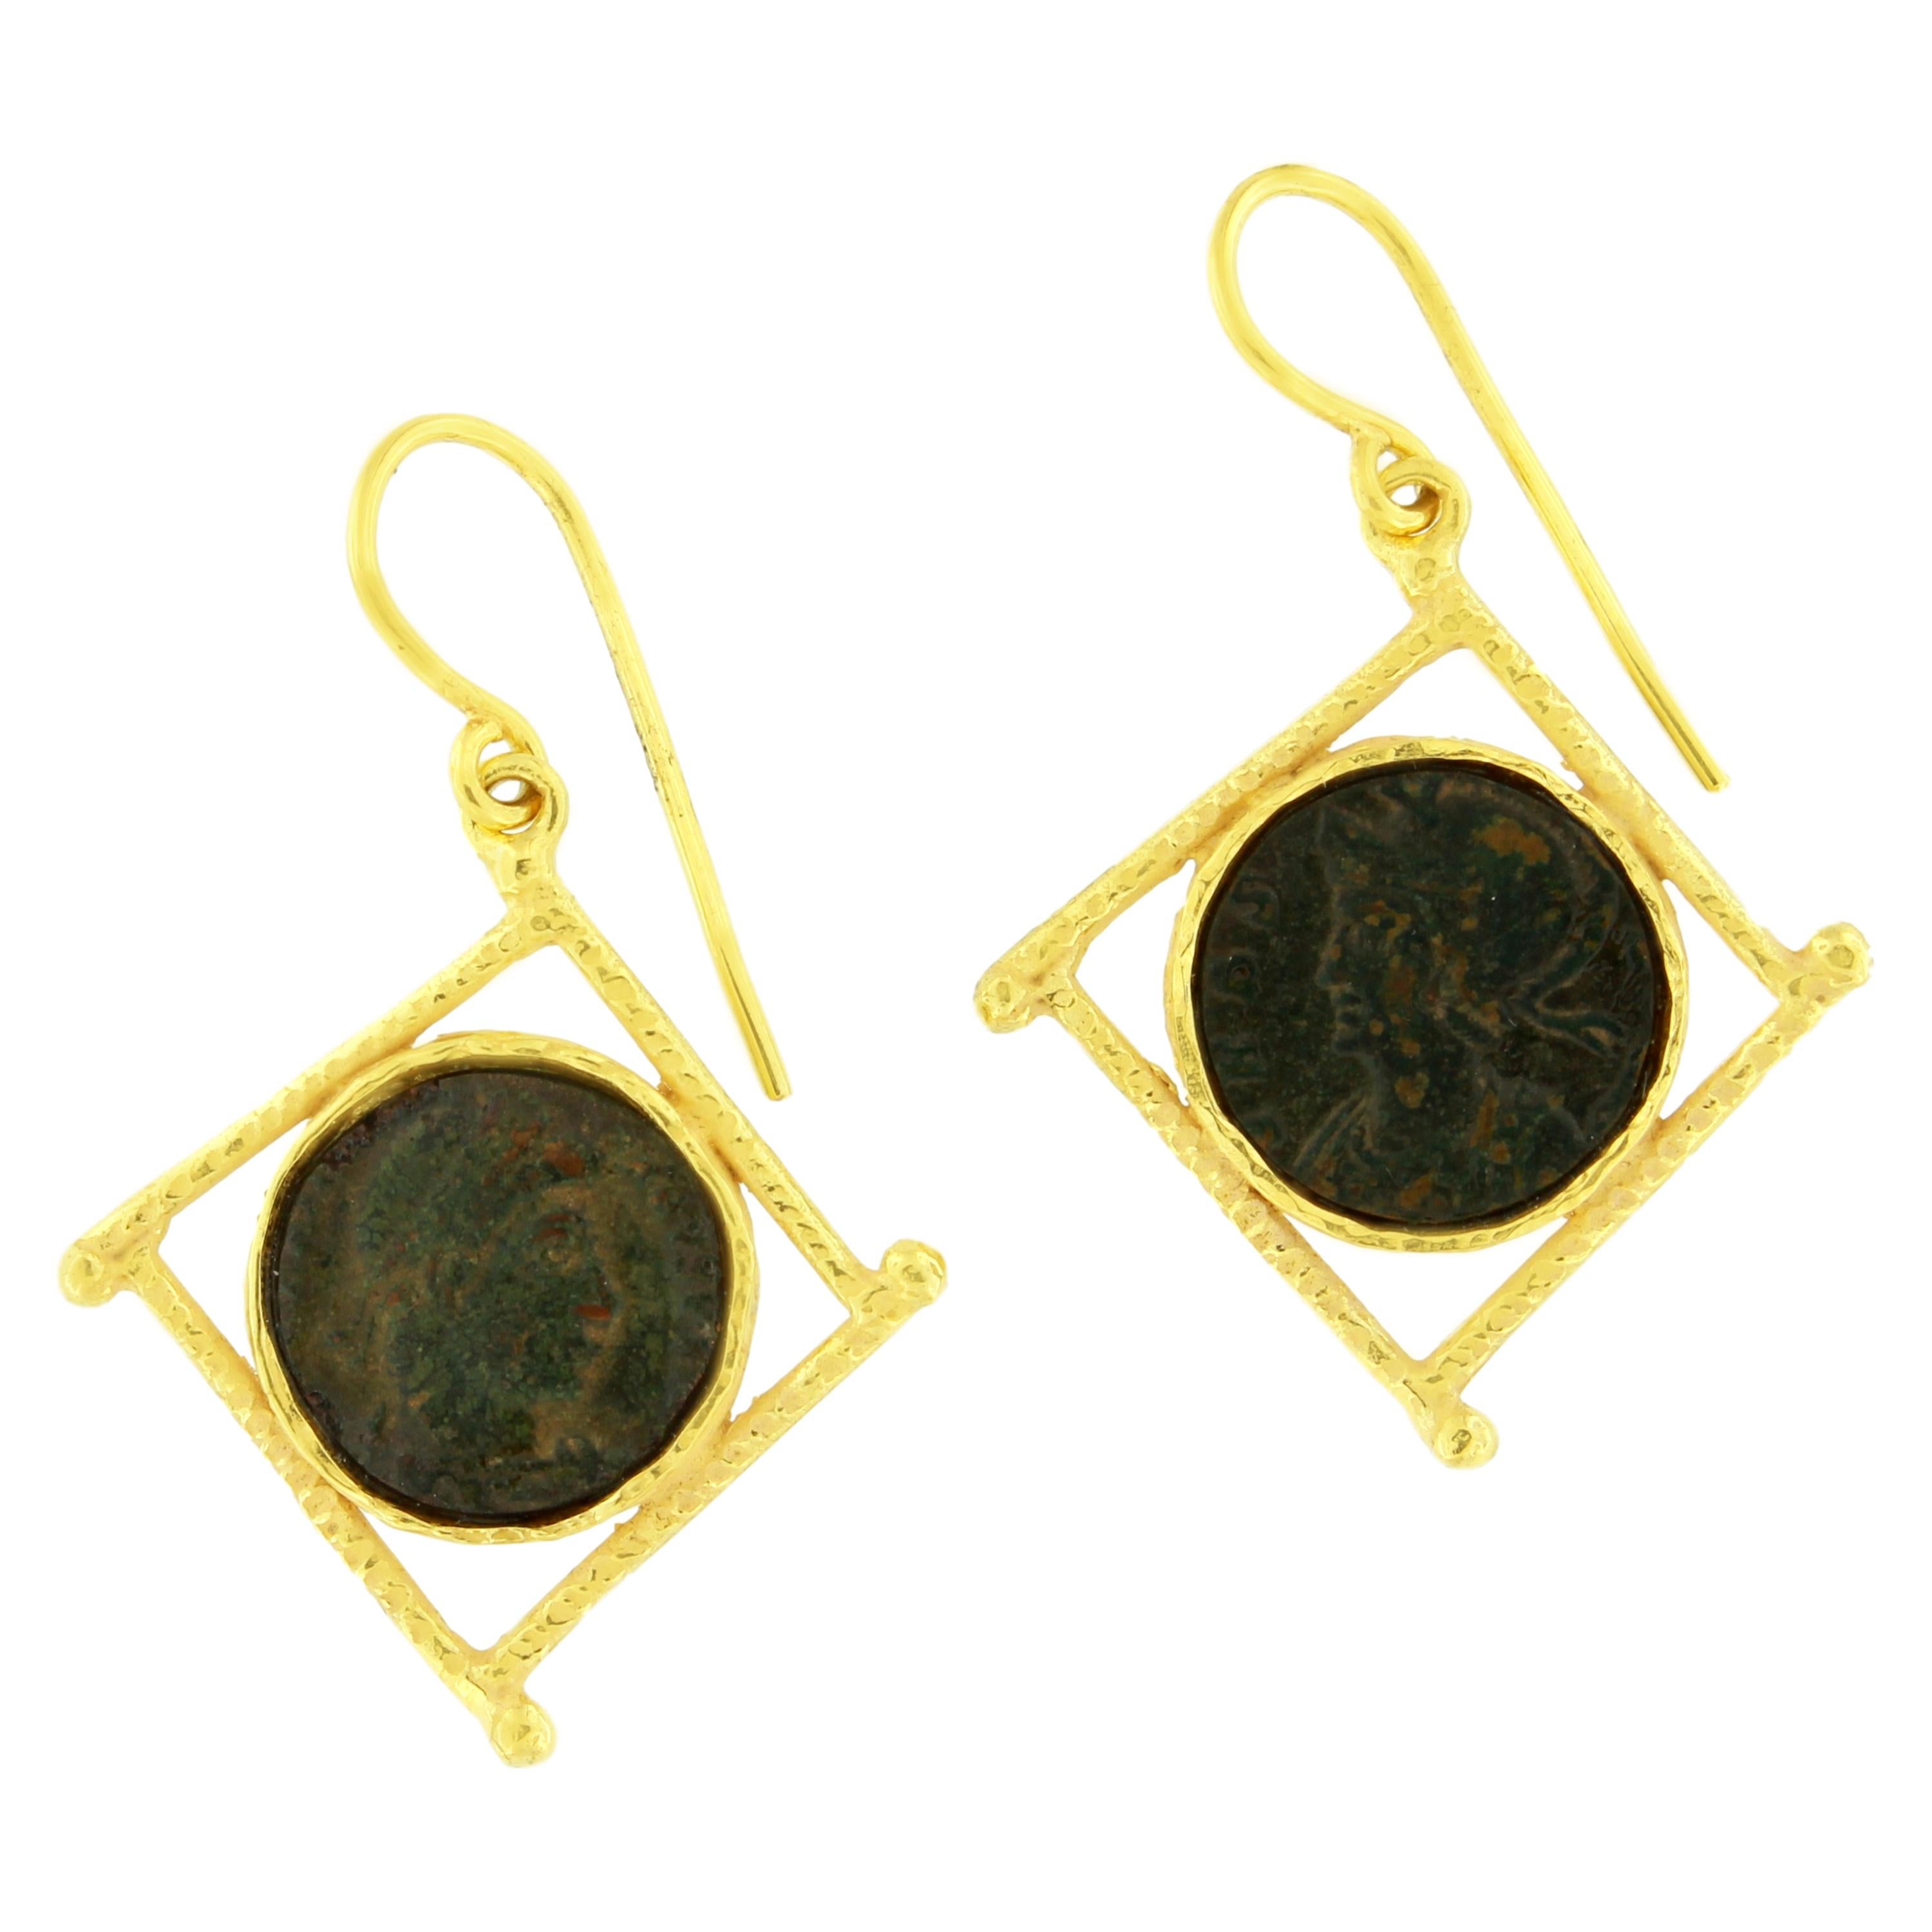 Sacchi Ancient Roman Coin 18 Karat Satin Yellow Gold Earrings